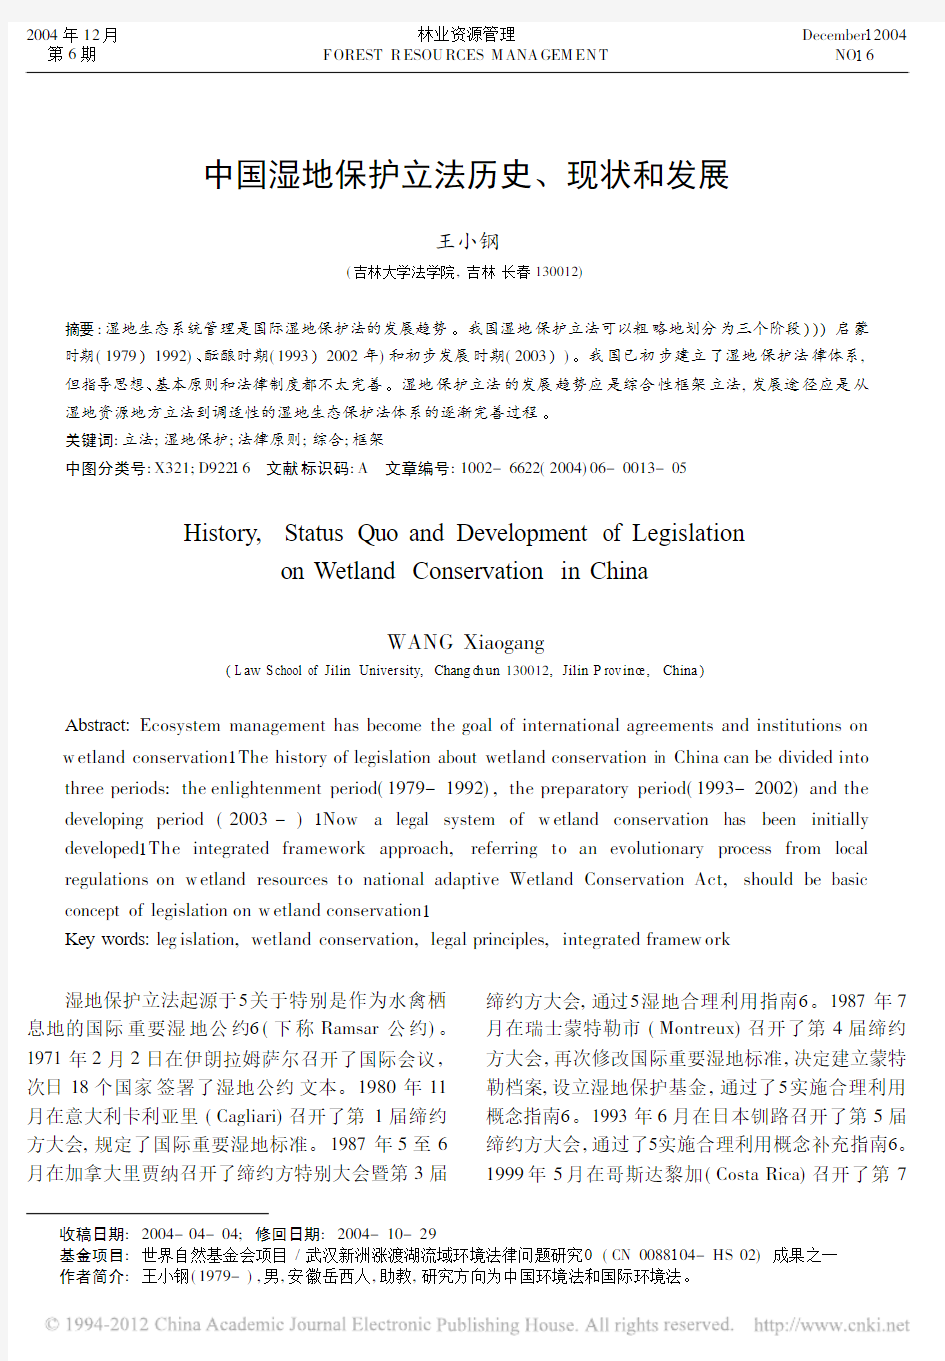 中国湿地保护立法历史、现状和发展